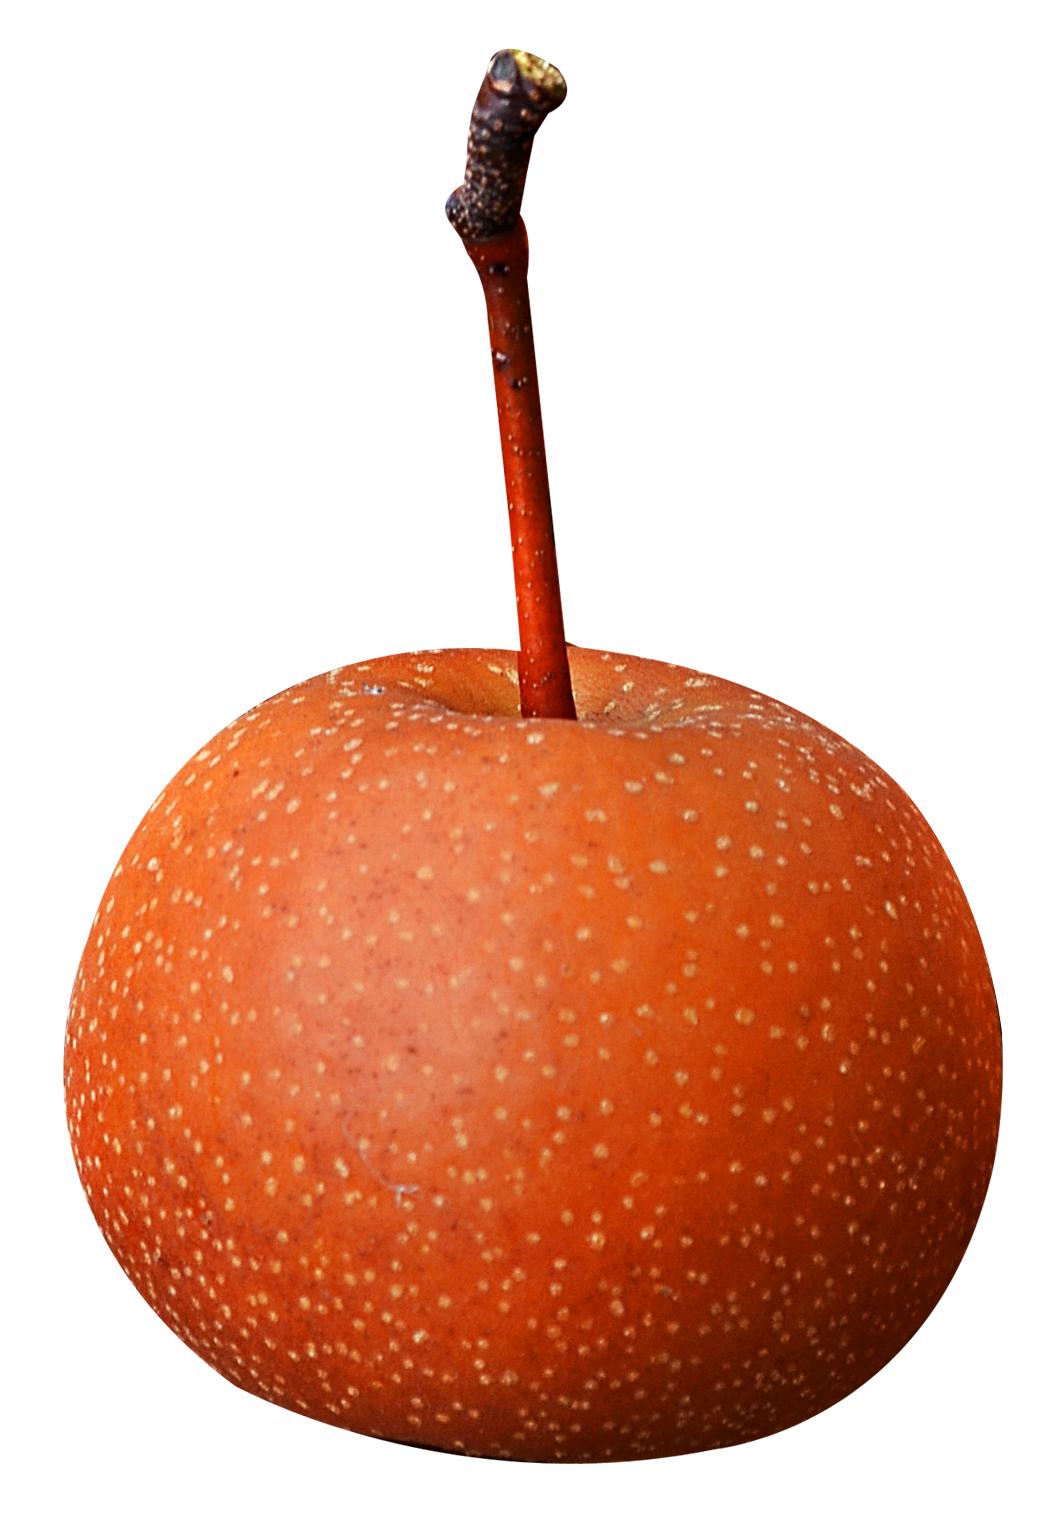 A Close Up Of An Apple